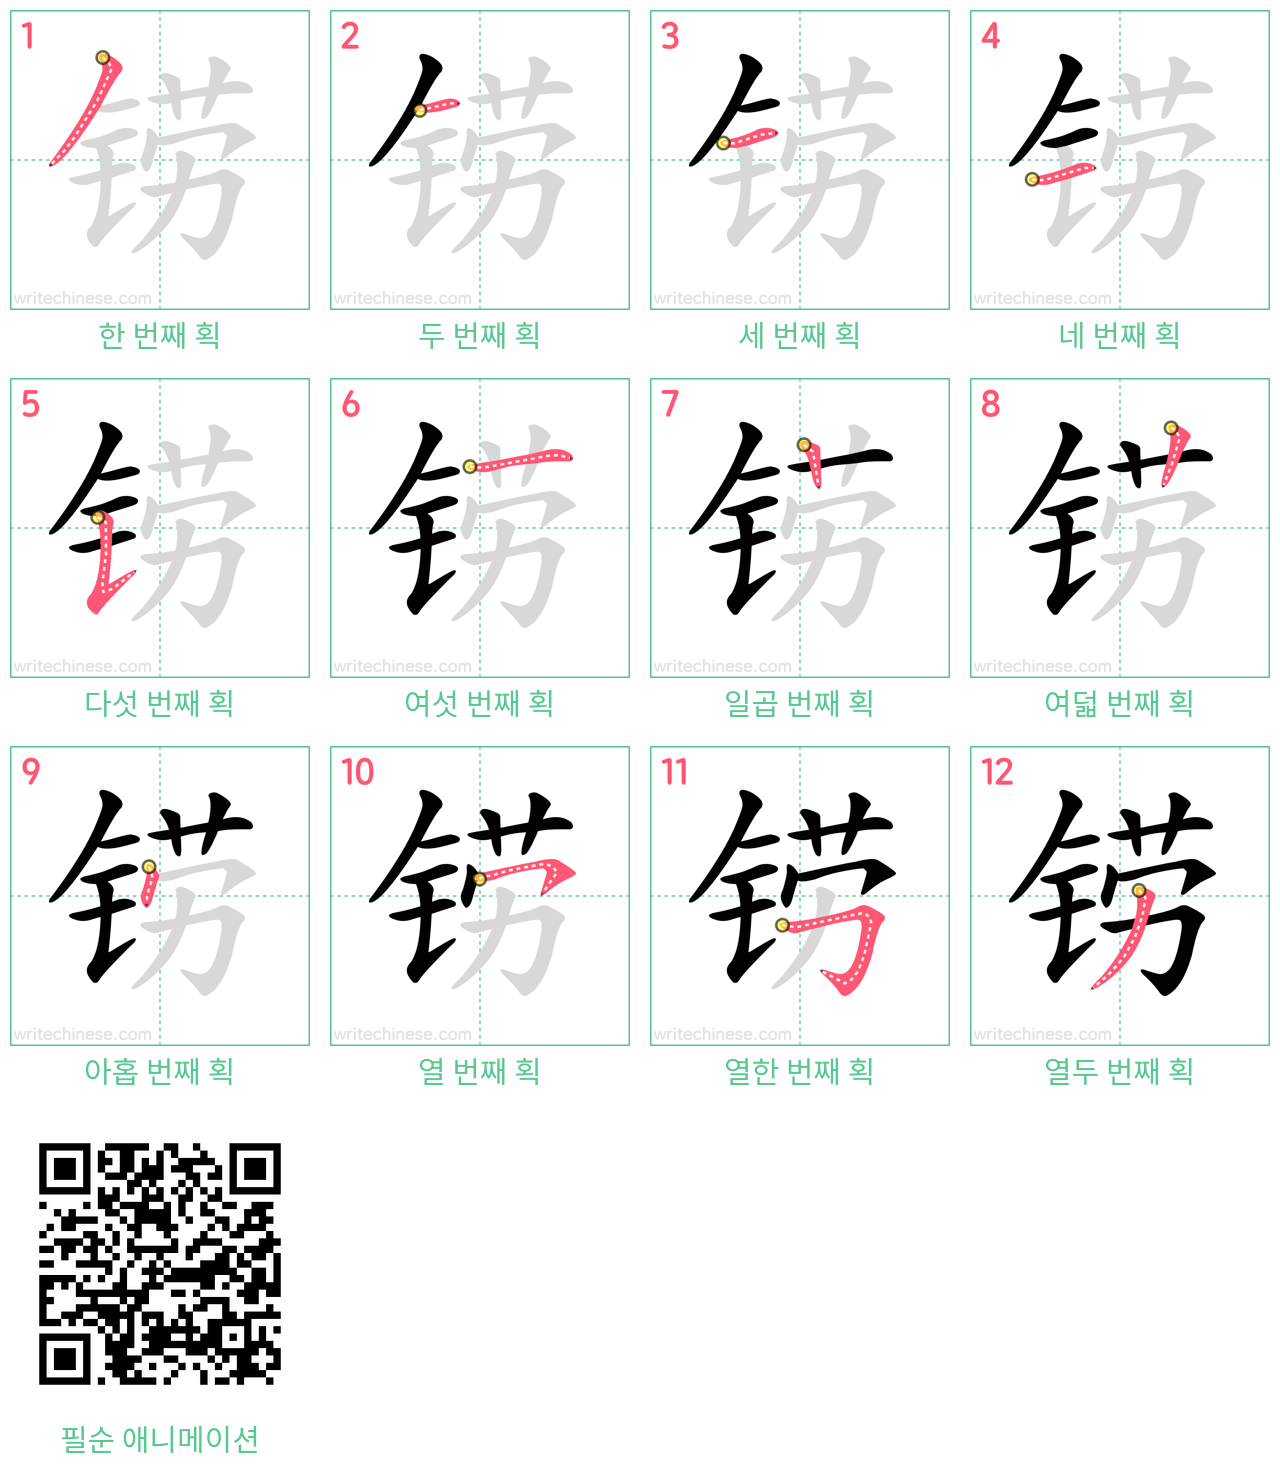 铹 step-by-step stroke order diagrams